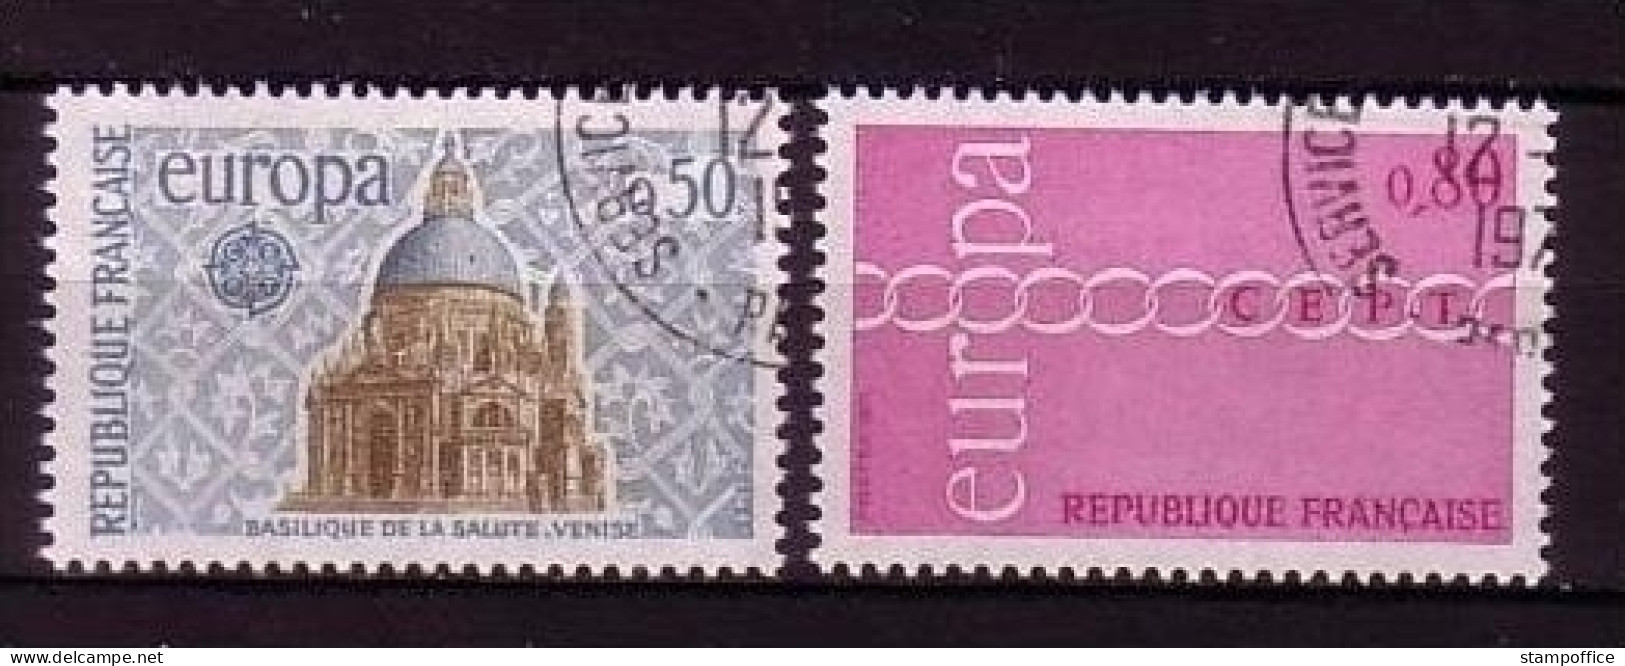 FRANKREICH MI-NR. 1748-1749 O EUROPA 1971 - KETTE - 1971